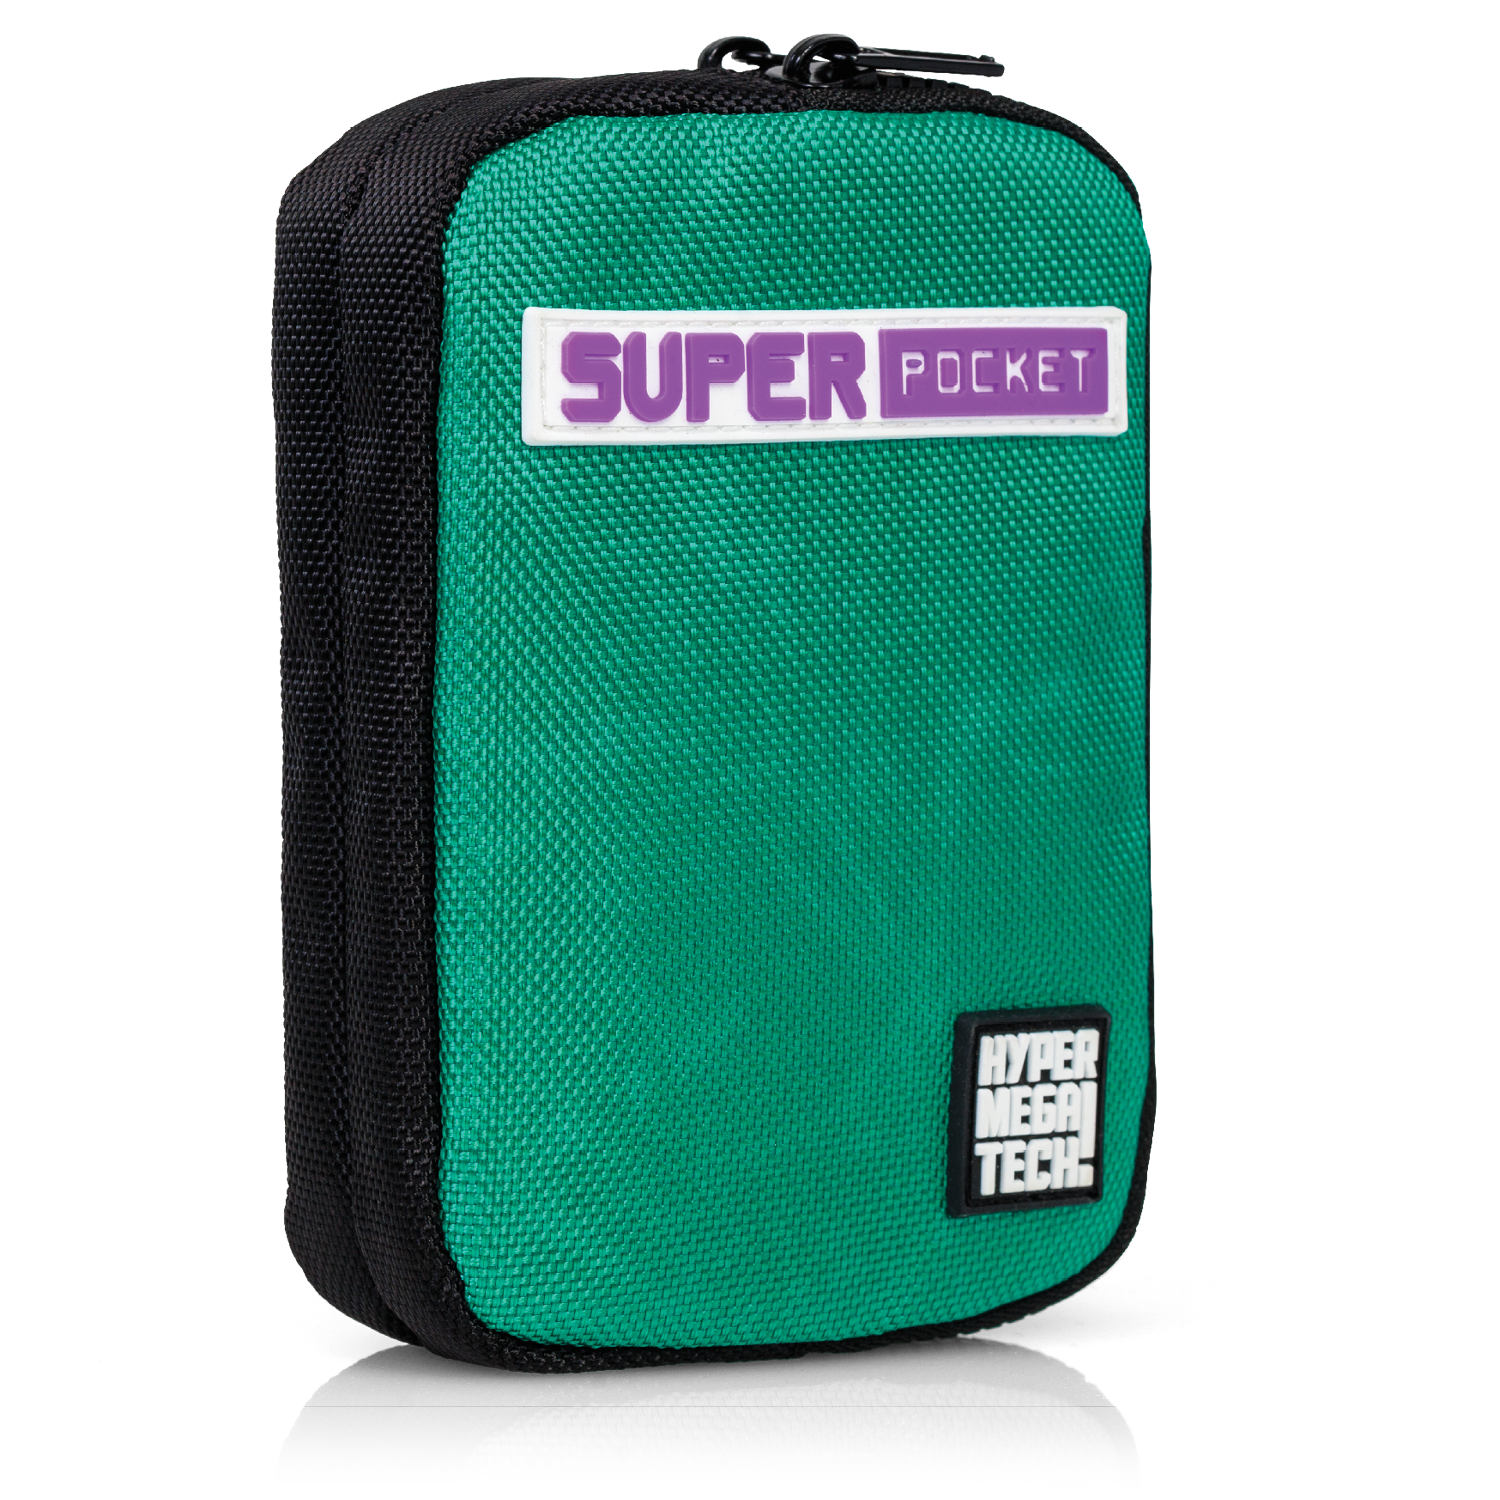 Super Pocket Case Green/Black